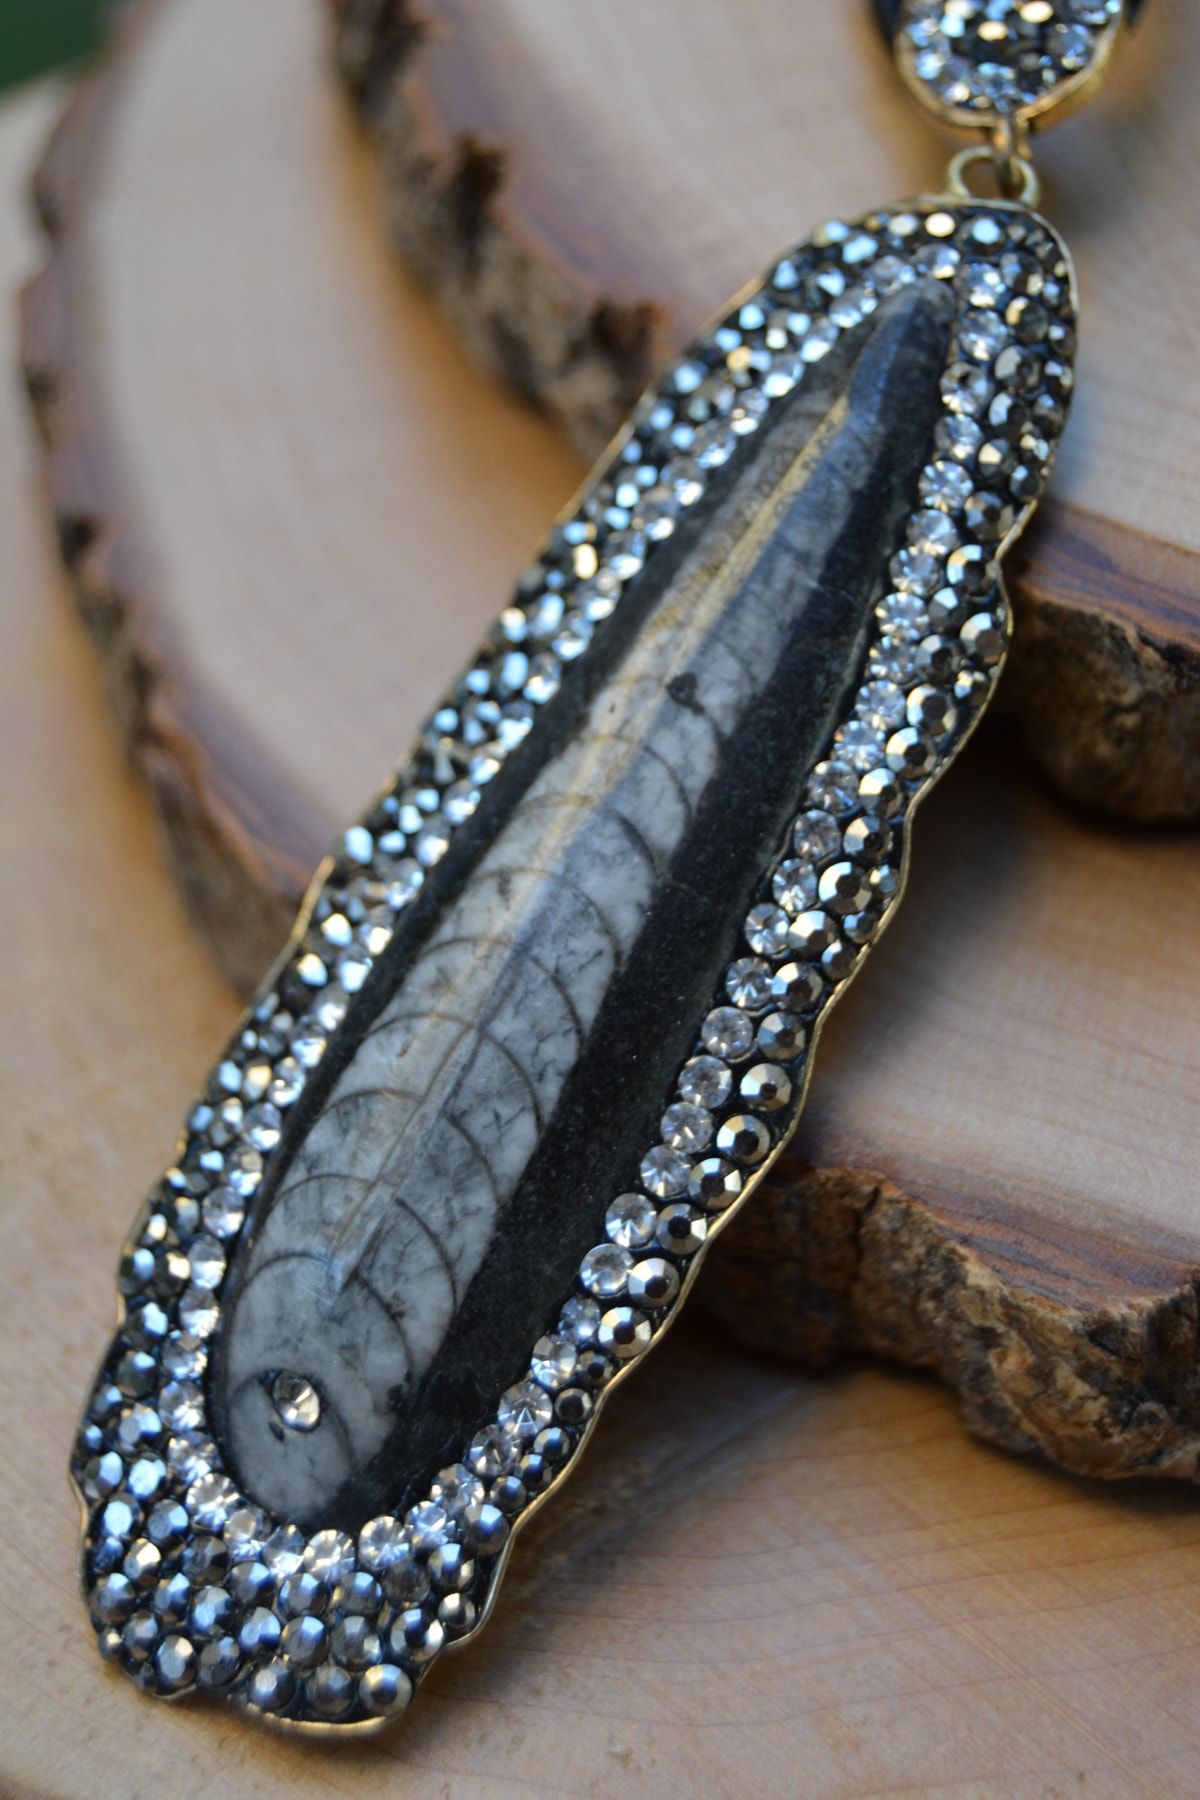 Stoneage Jewellery Balık Fosili Doğal Taş El Yapımı Bayankolye